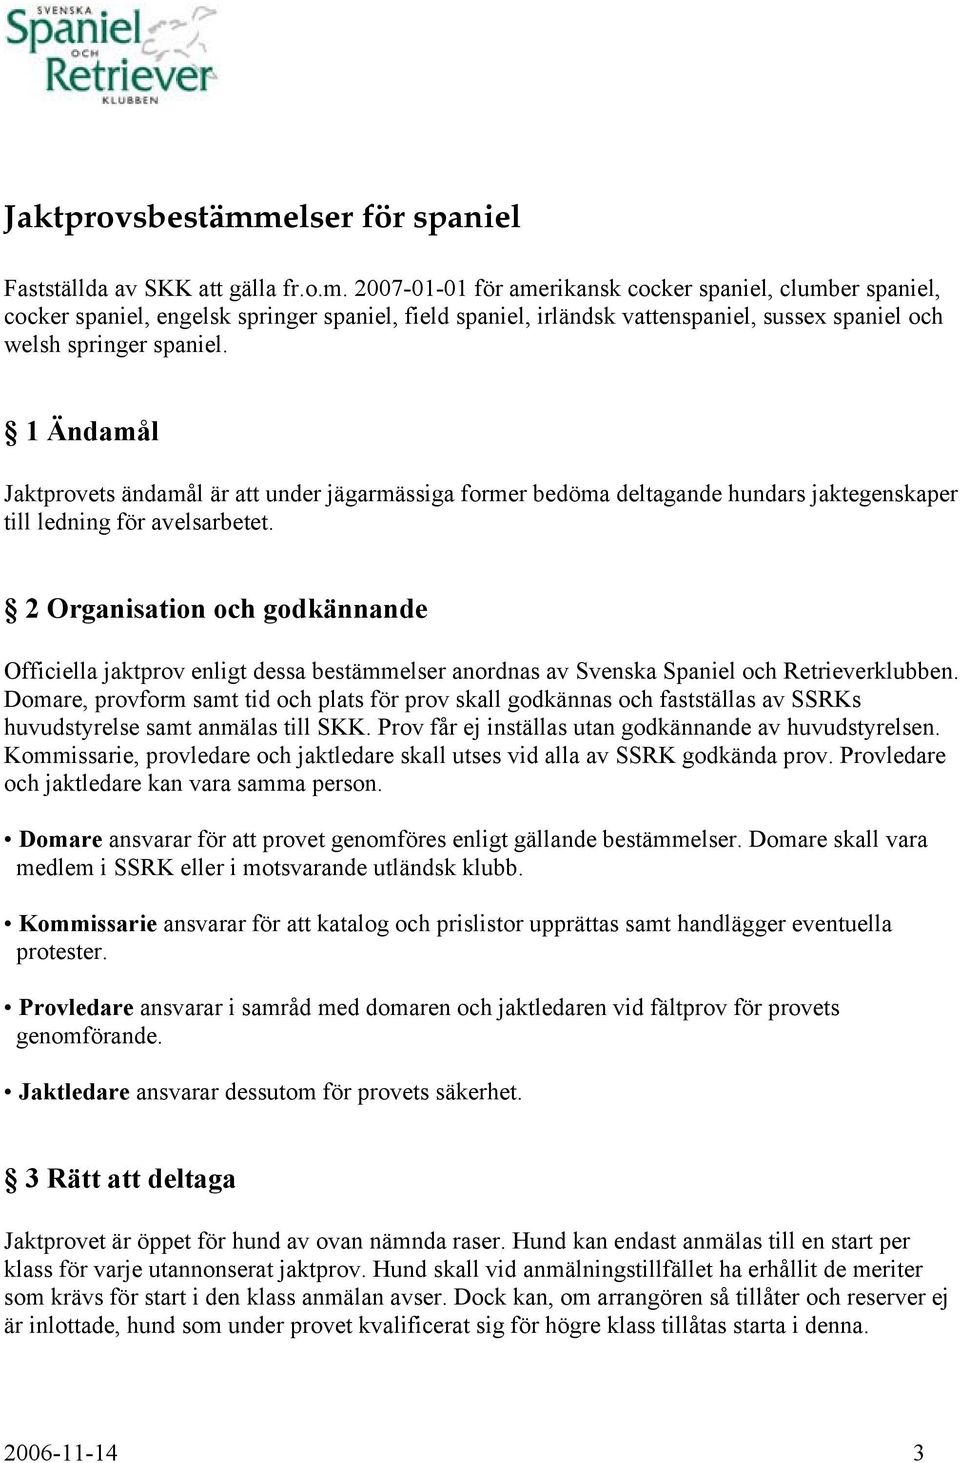 2 Organisation och godkännande Officiella jaktprov enligt dessa bestämmelser anordnas av Svenska Spaniel och Retrieverklubben.